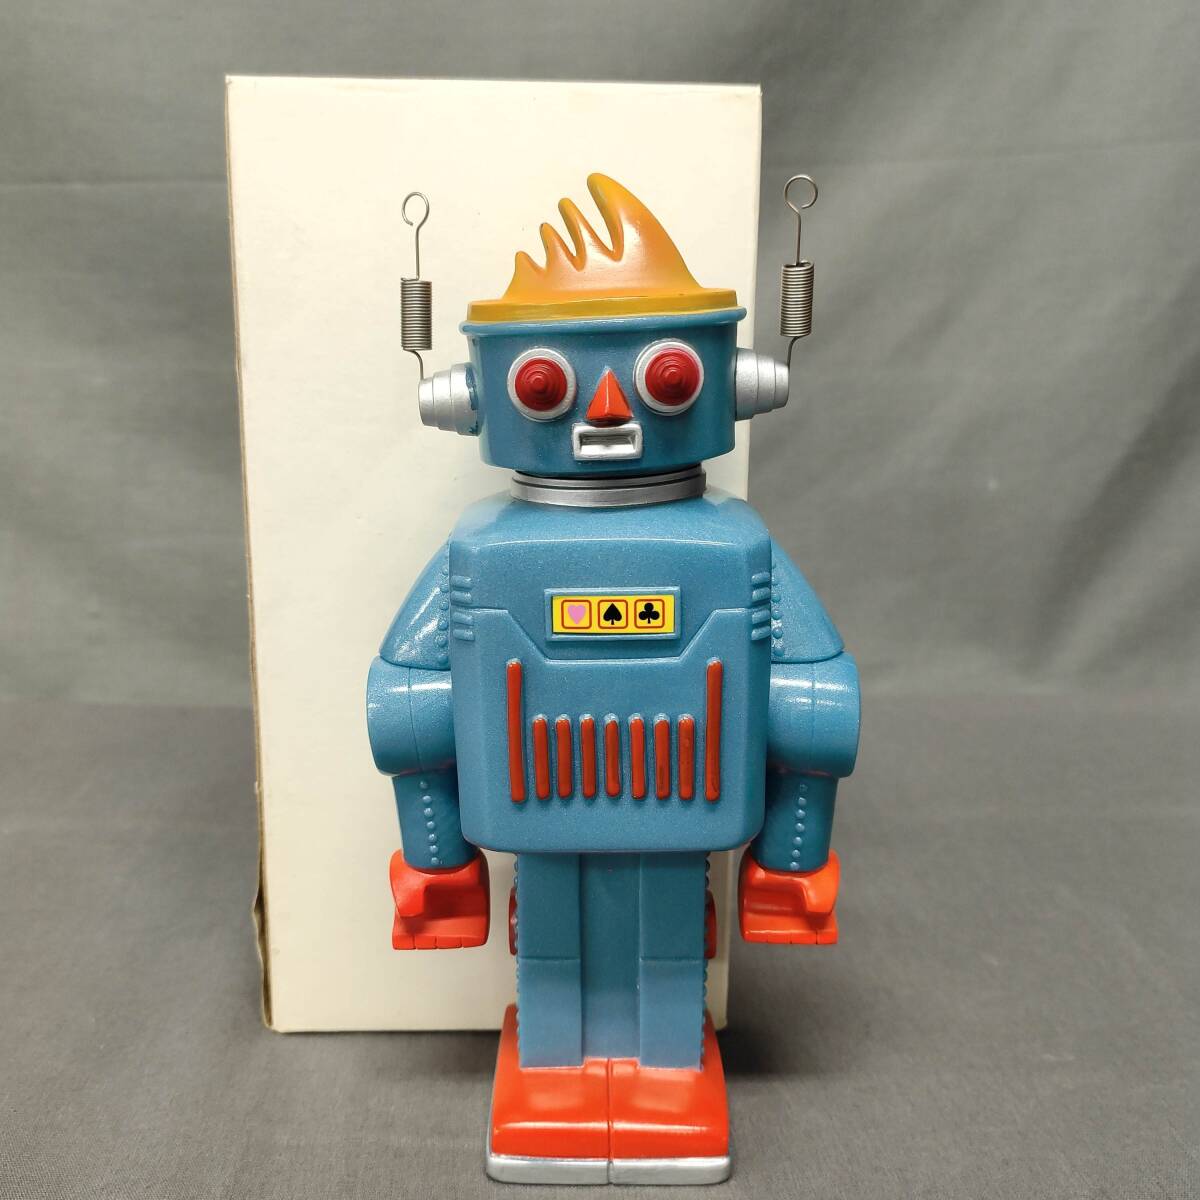 060418 263610 アートネイチャー販促物 ロボット型貯金箱 コレクション ホビー おもちゃ 人形 の画像1